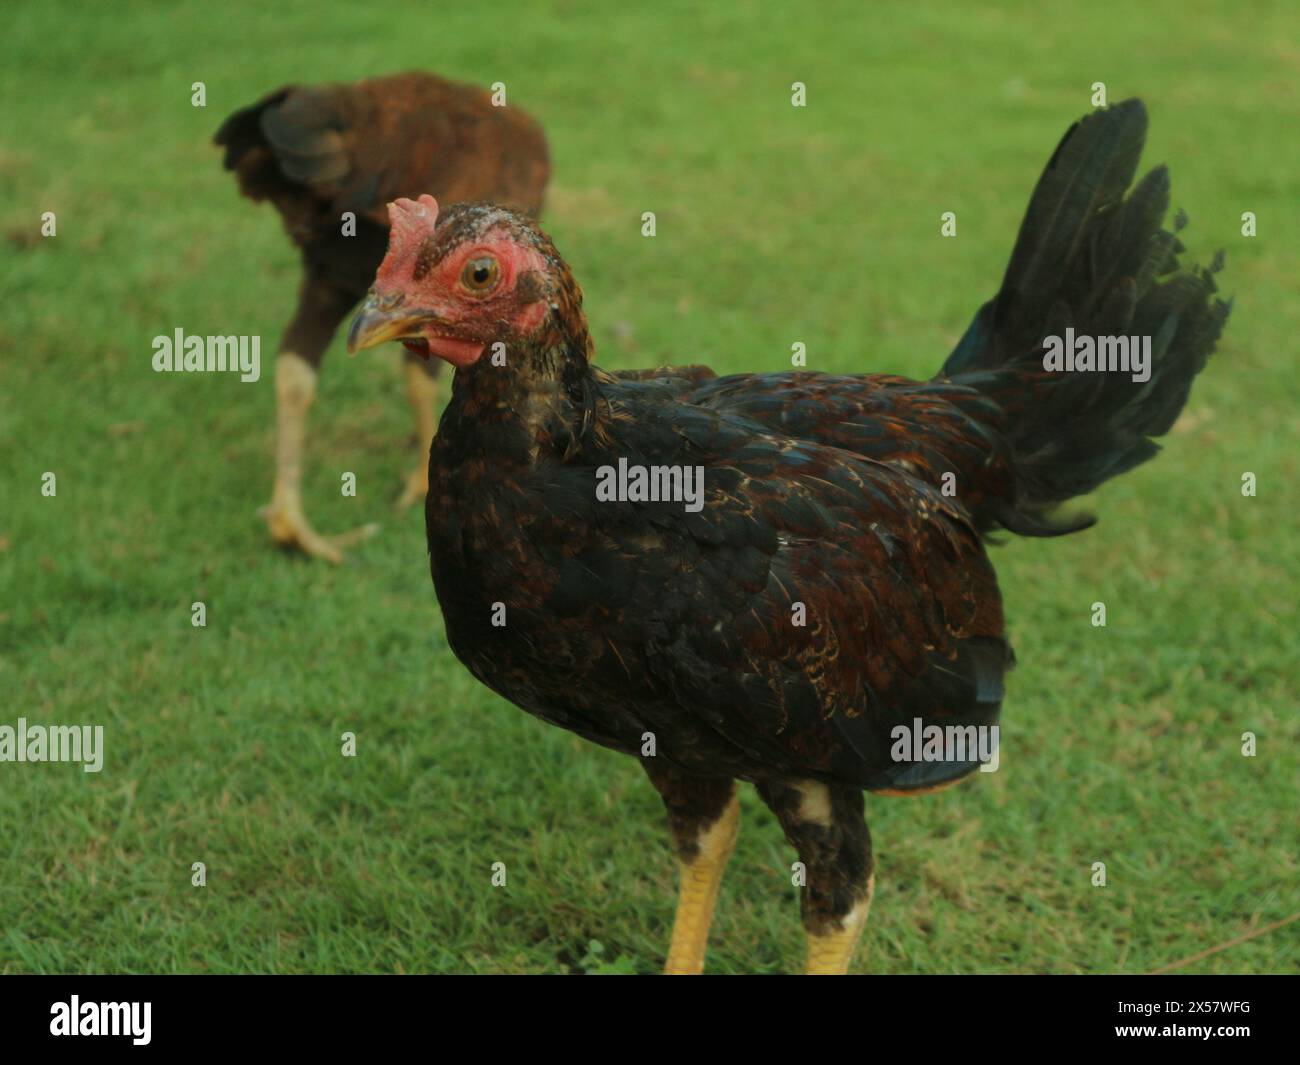 De près, le poulet mâle local est rouge et noir Banque D'Images